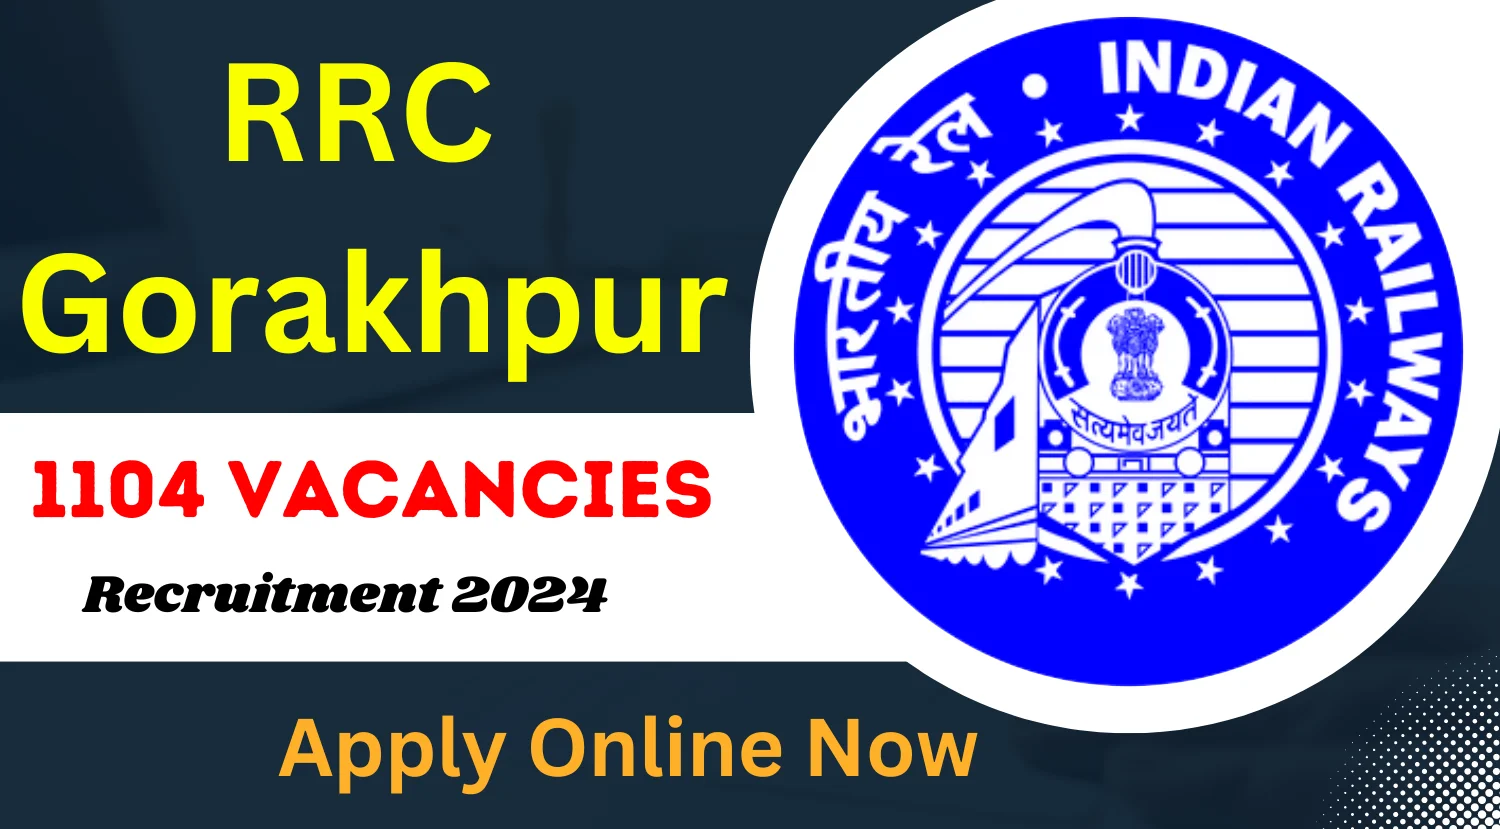 RRC Gorakhpur IIT Apprenticeship Training Recruitment 2024